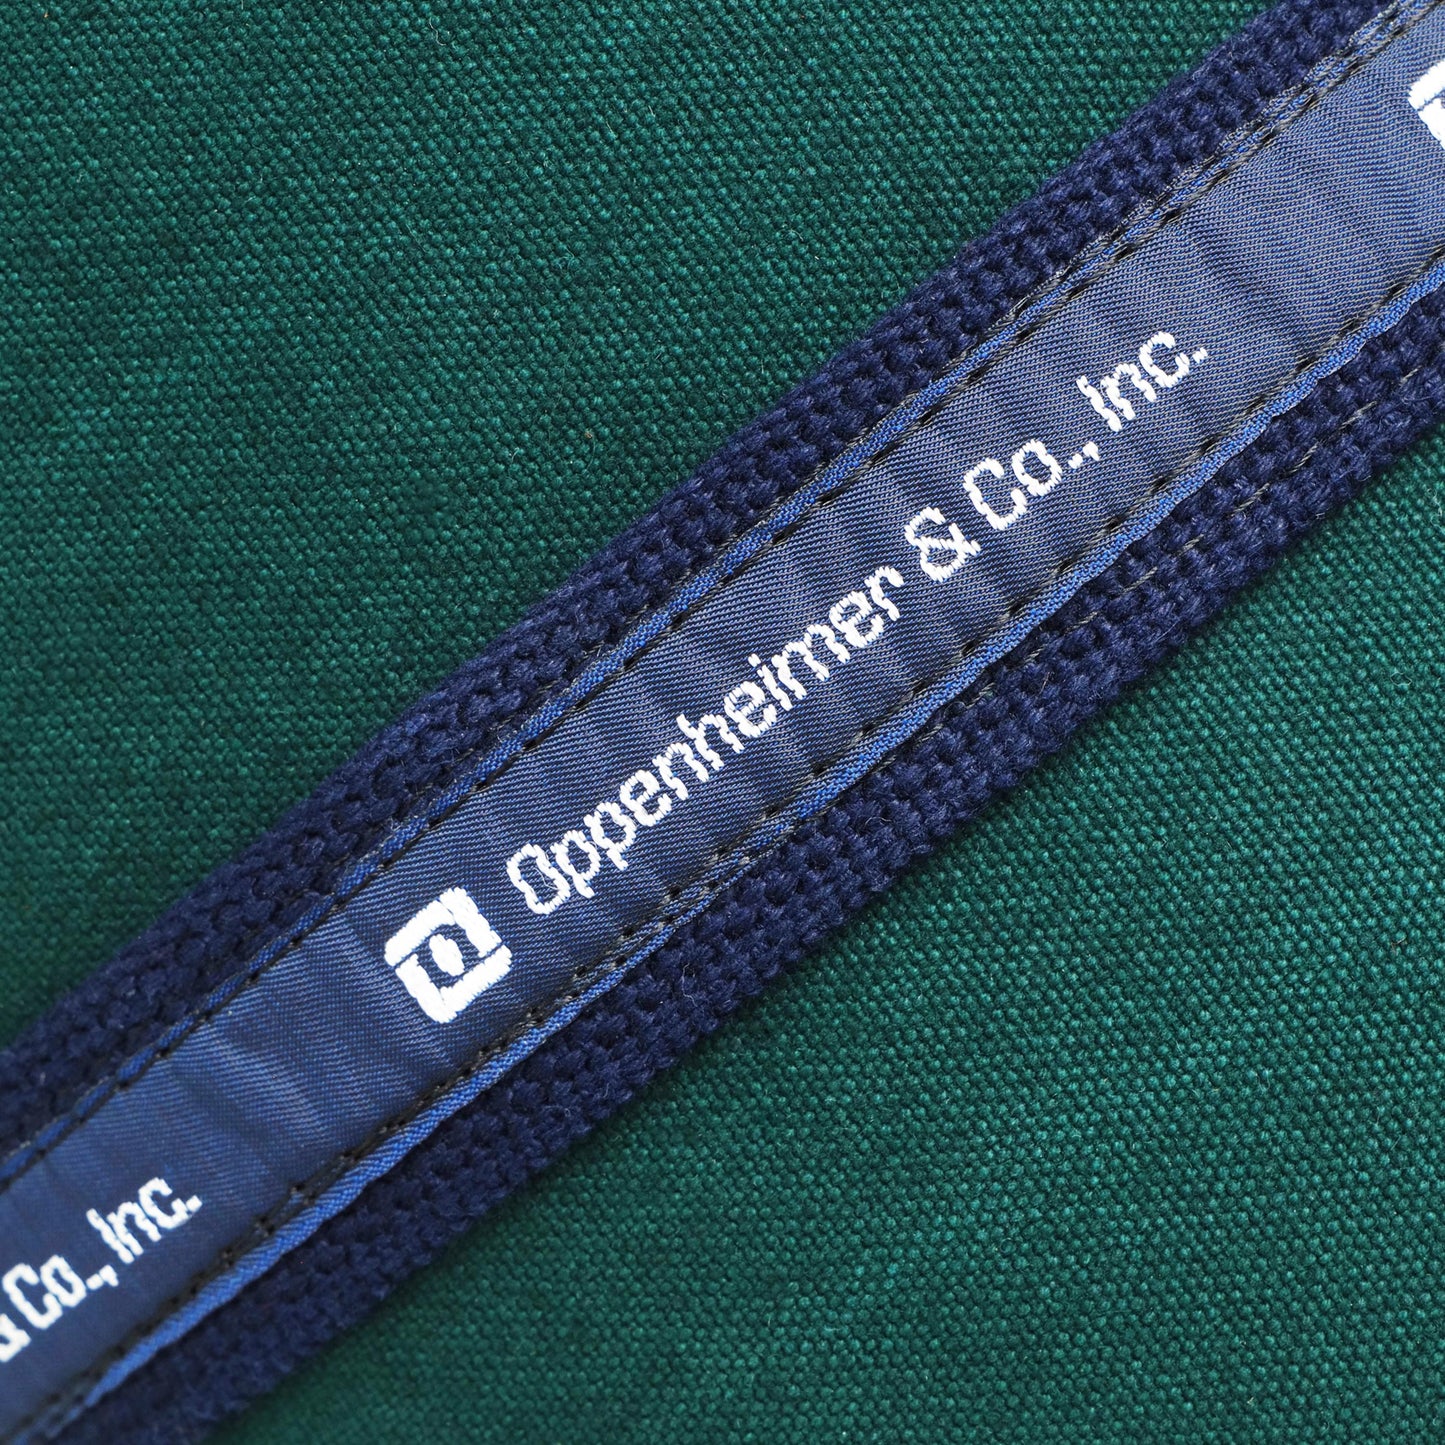 Oppenheimer & Co., Inc Square Banker Bag